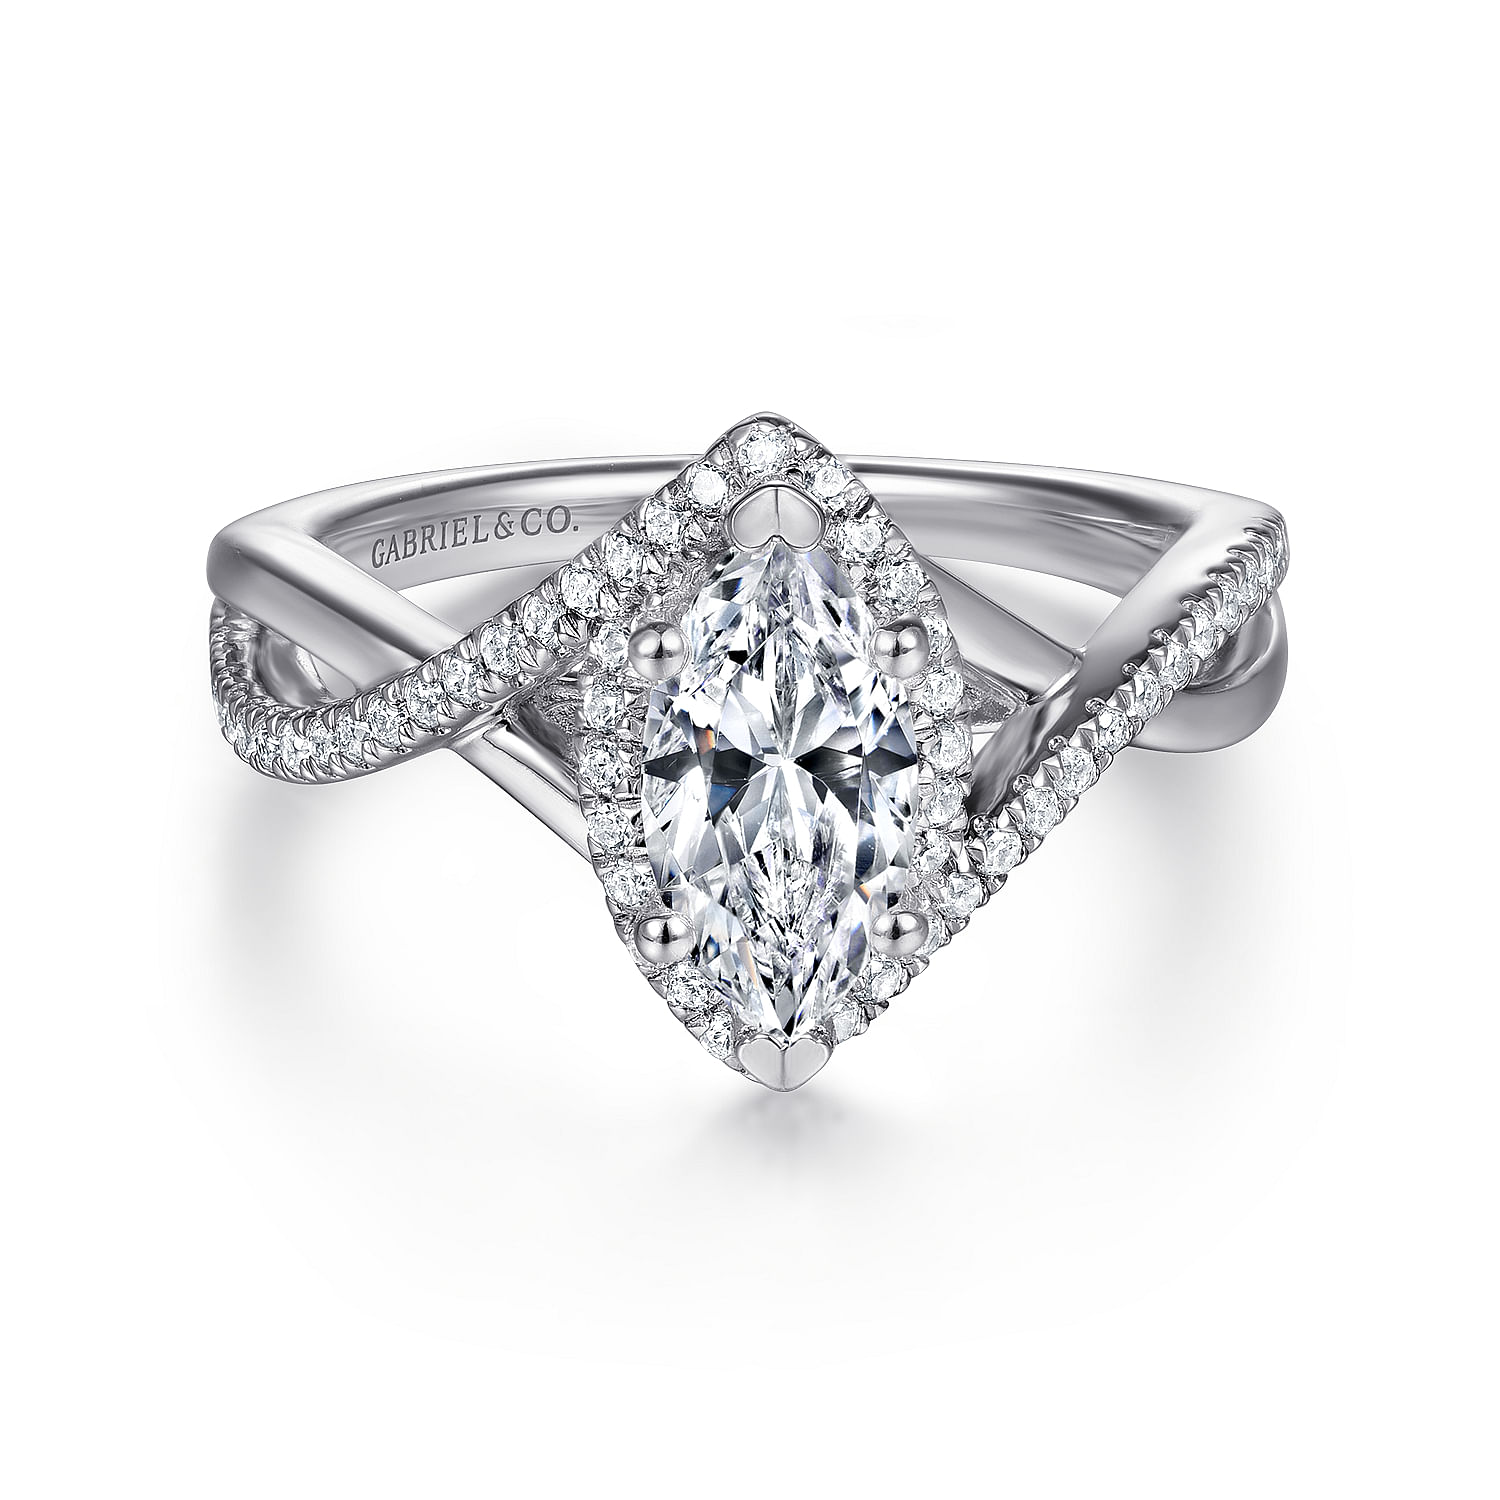 Courtney---14K-White-Gold-Marquise-Halo-Diamond-Engagement-Ring1